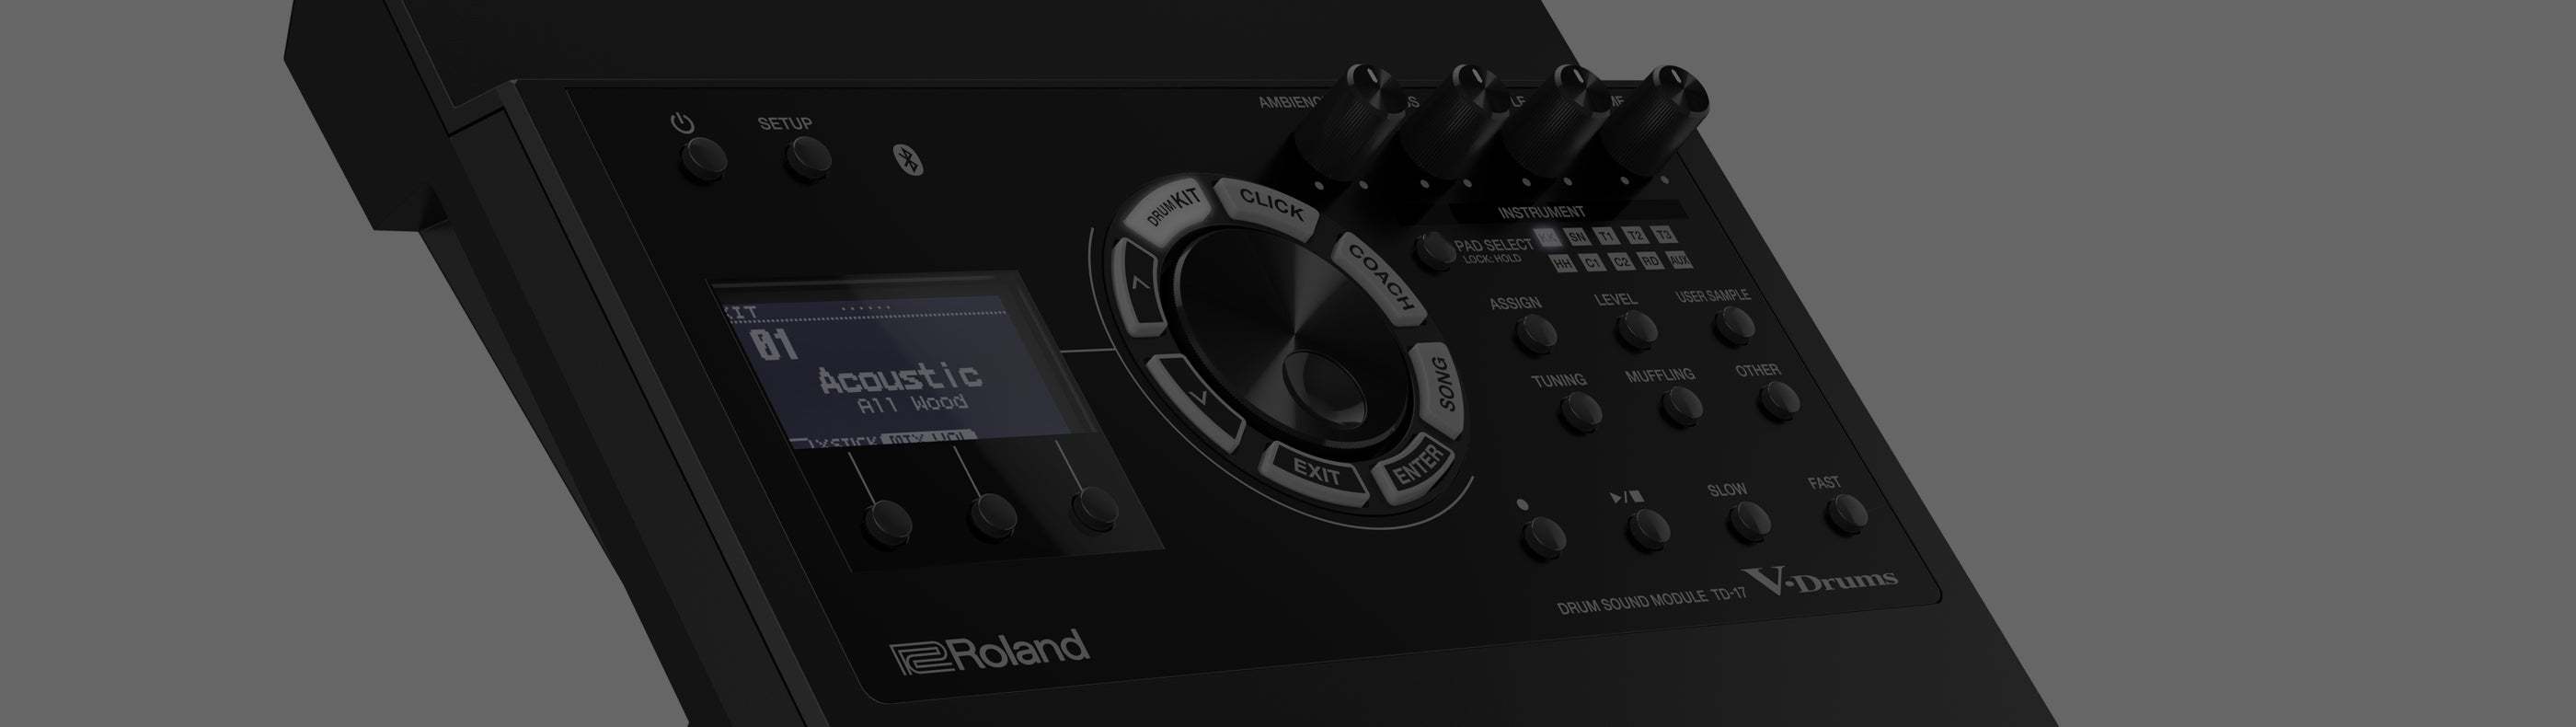 Roland TD-17 Drum Sound Module – Kraft Music